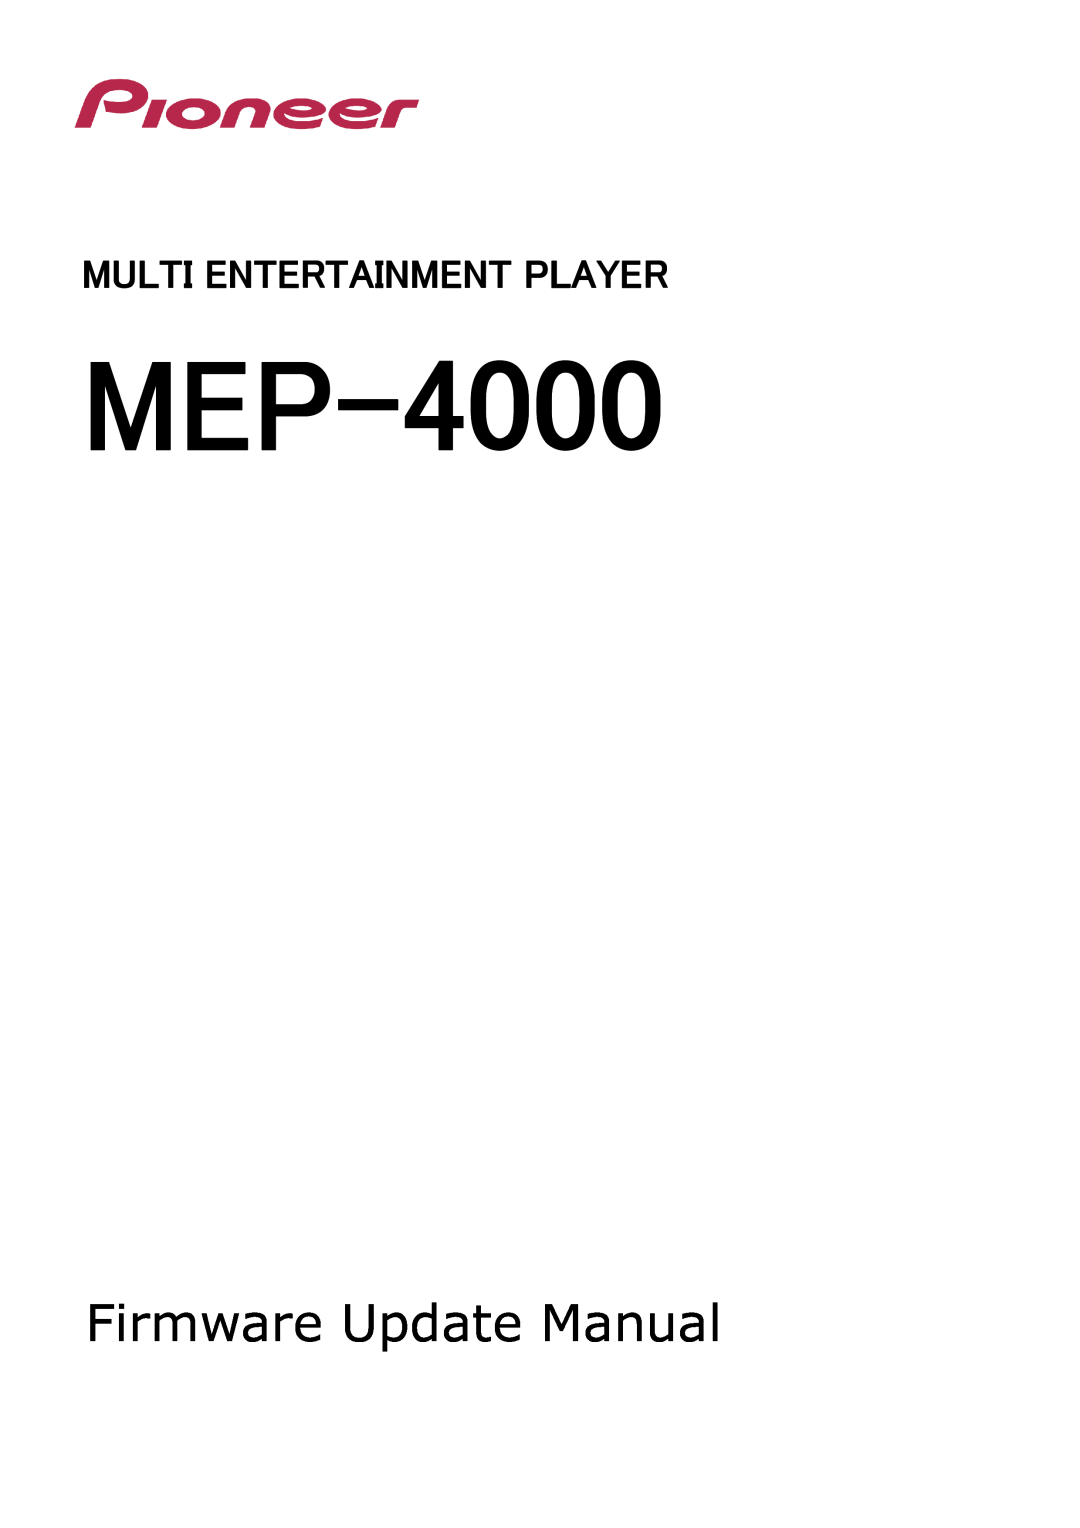 Pioneer Multi Entertainment Player manual MEP-4000, Firmware Update Manual 